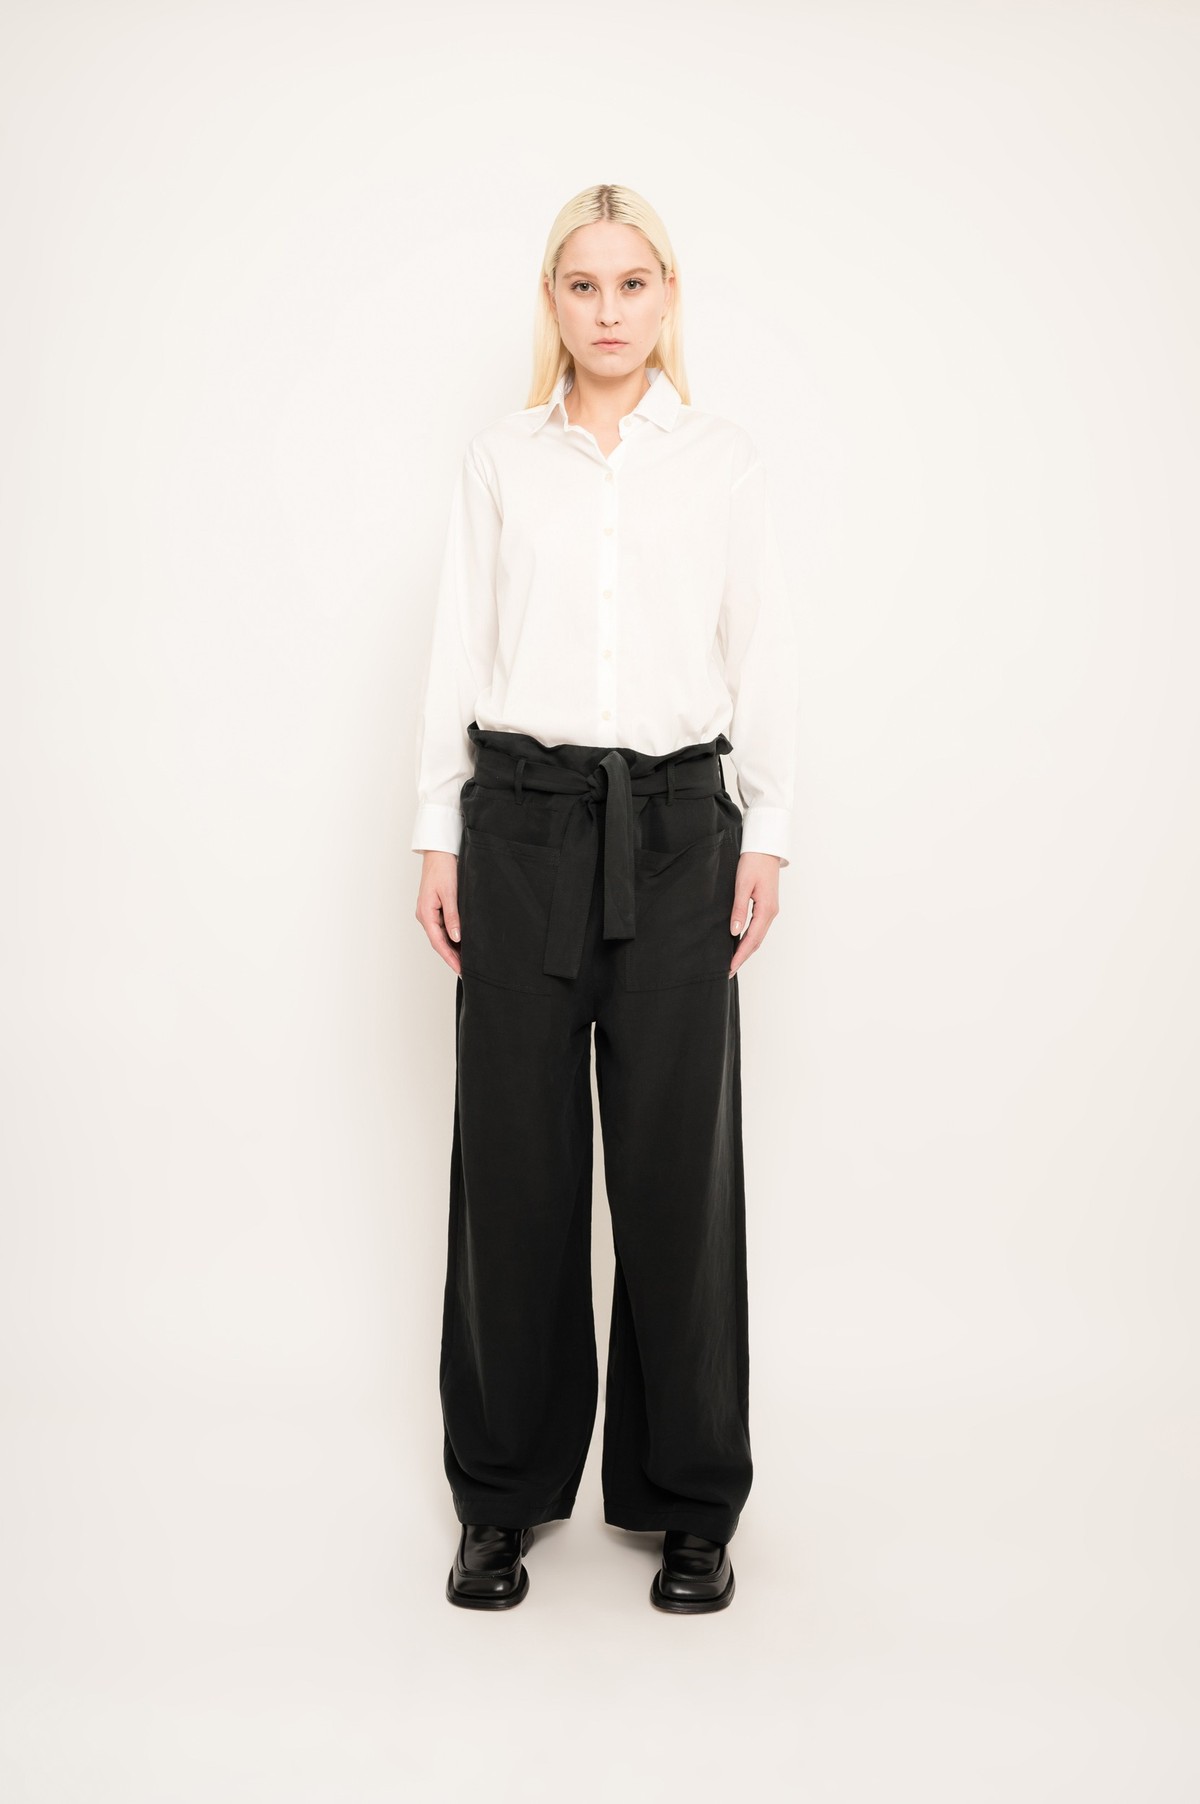 calça ampla estilo paperbag em modal linho | modal linen wide paperbag pants